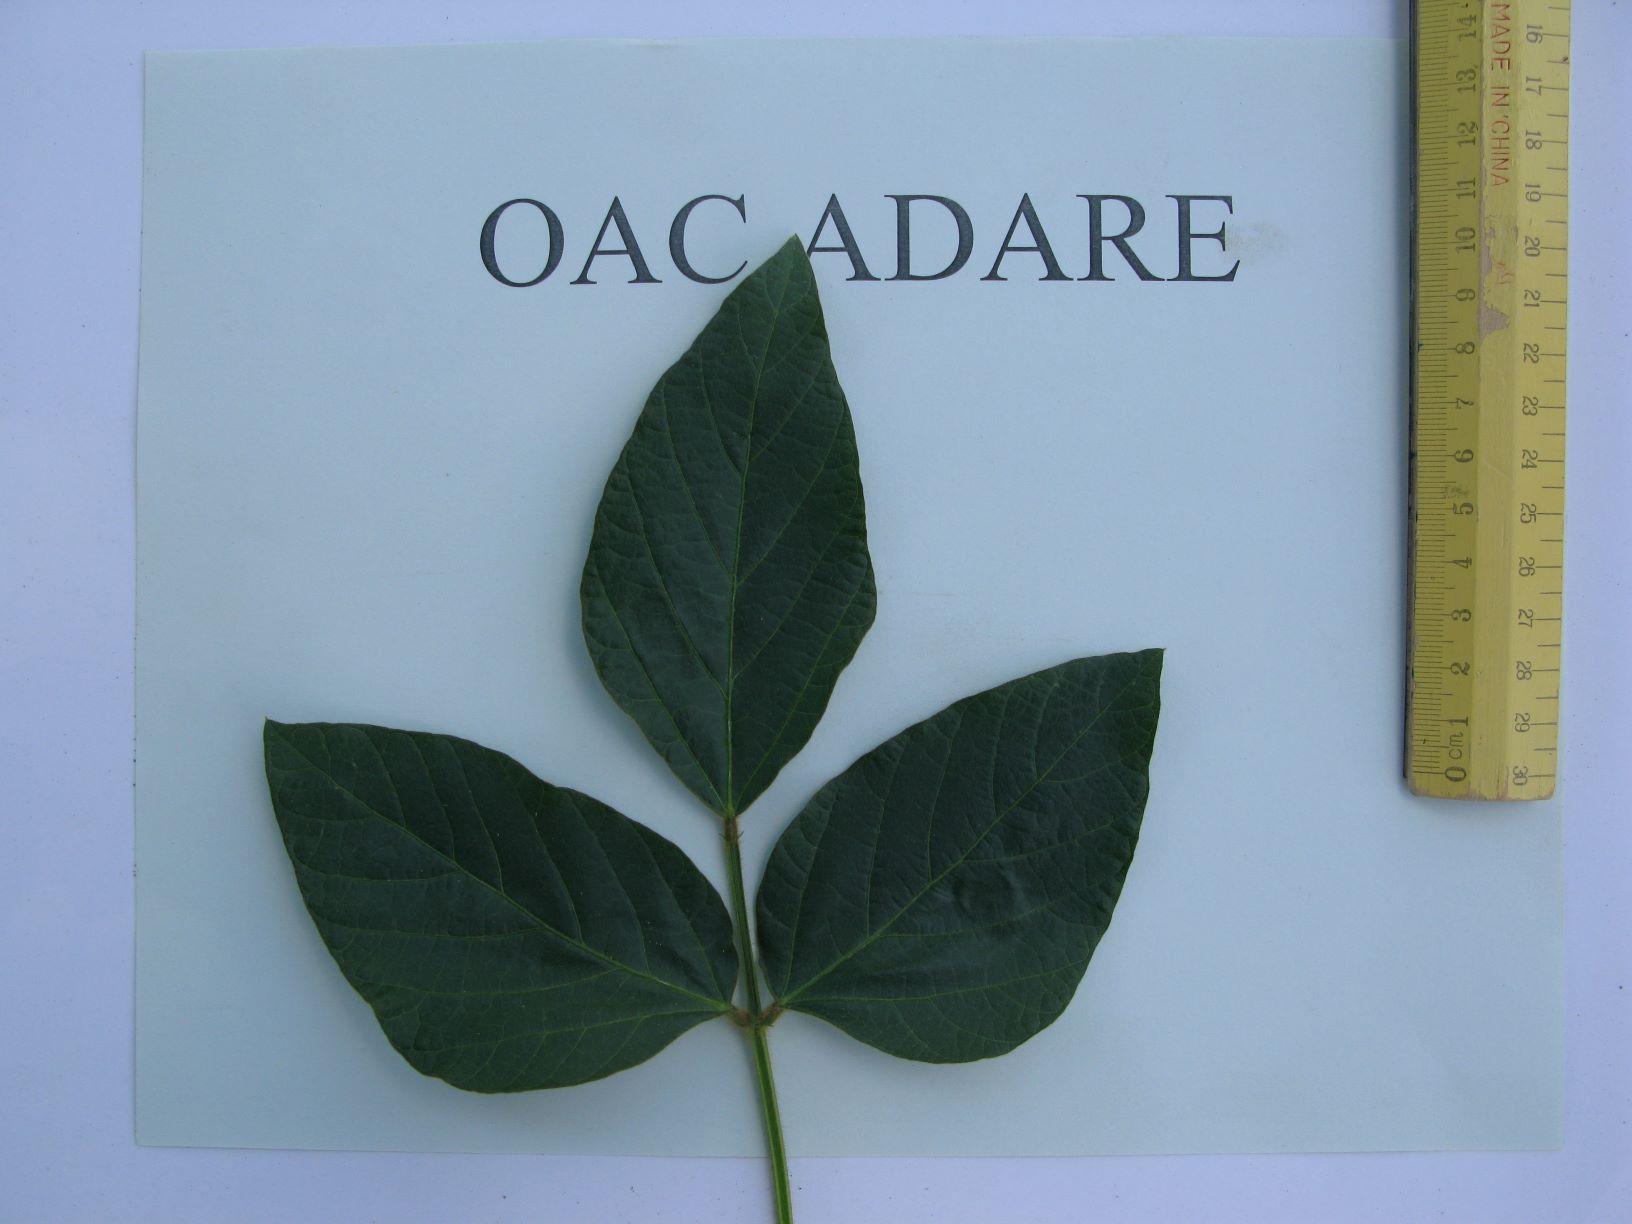 OAC Adare